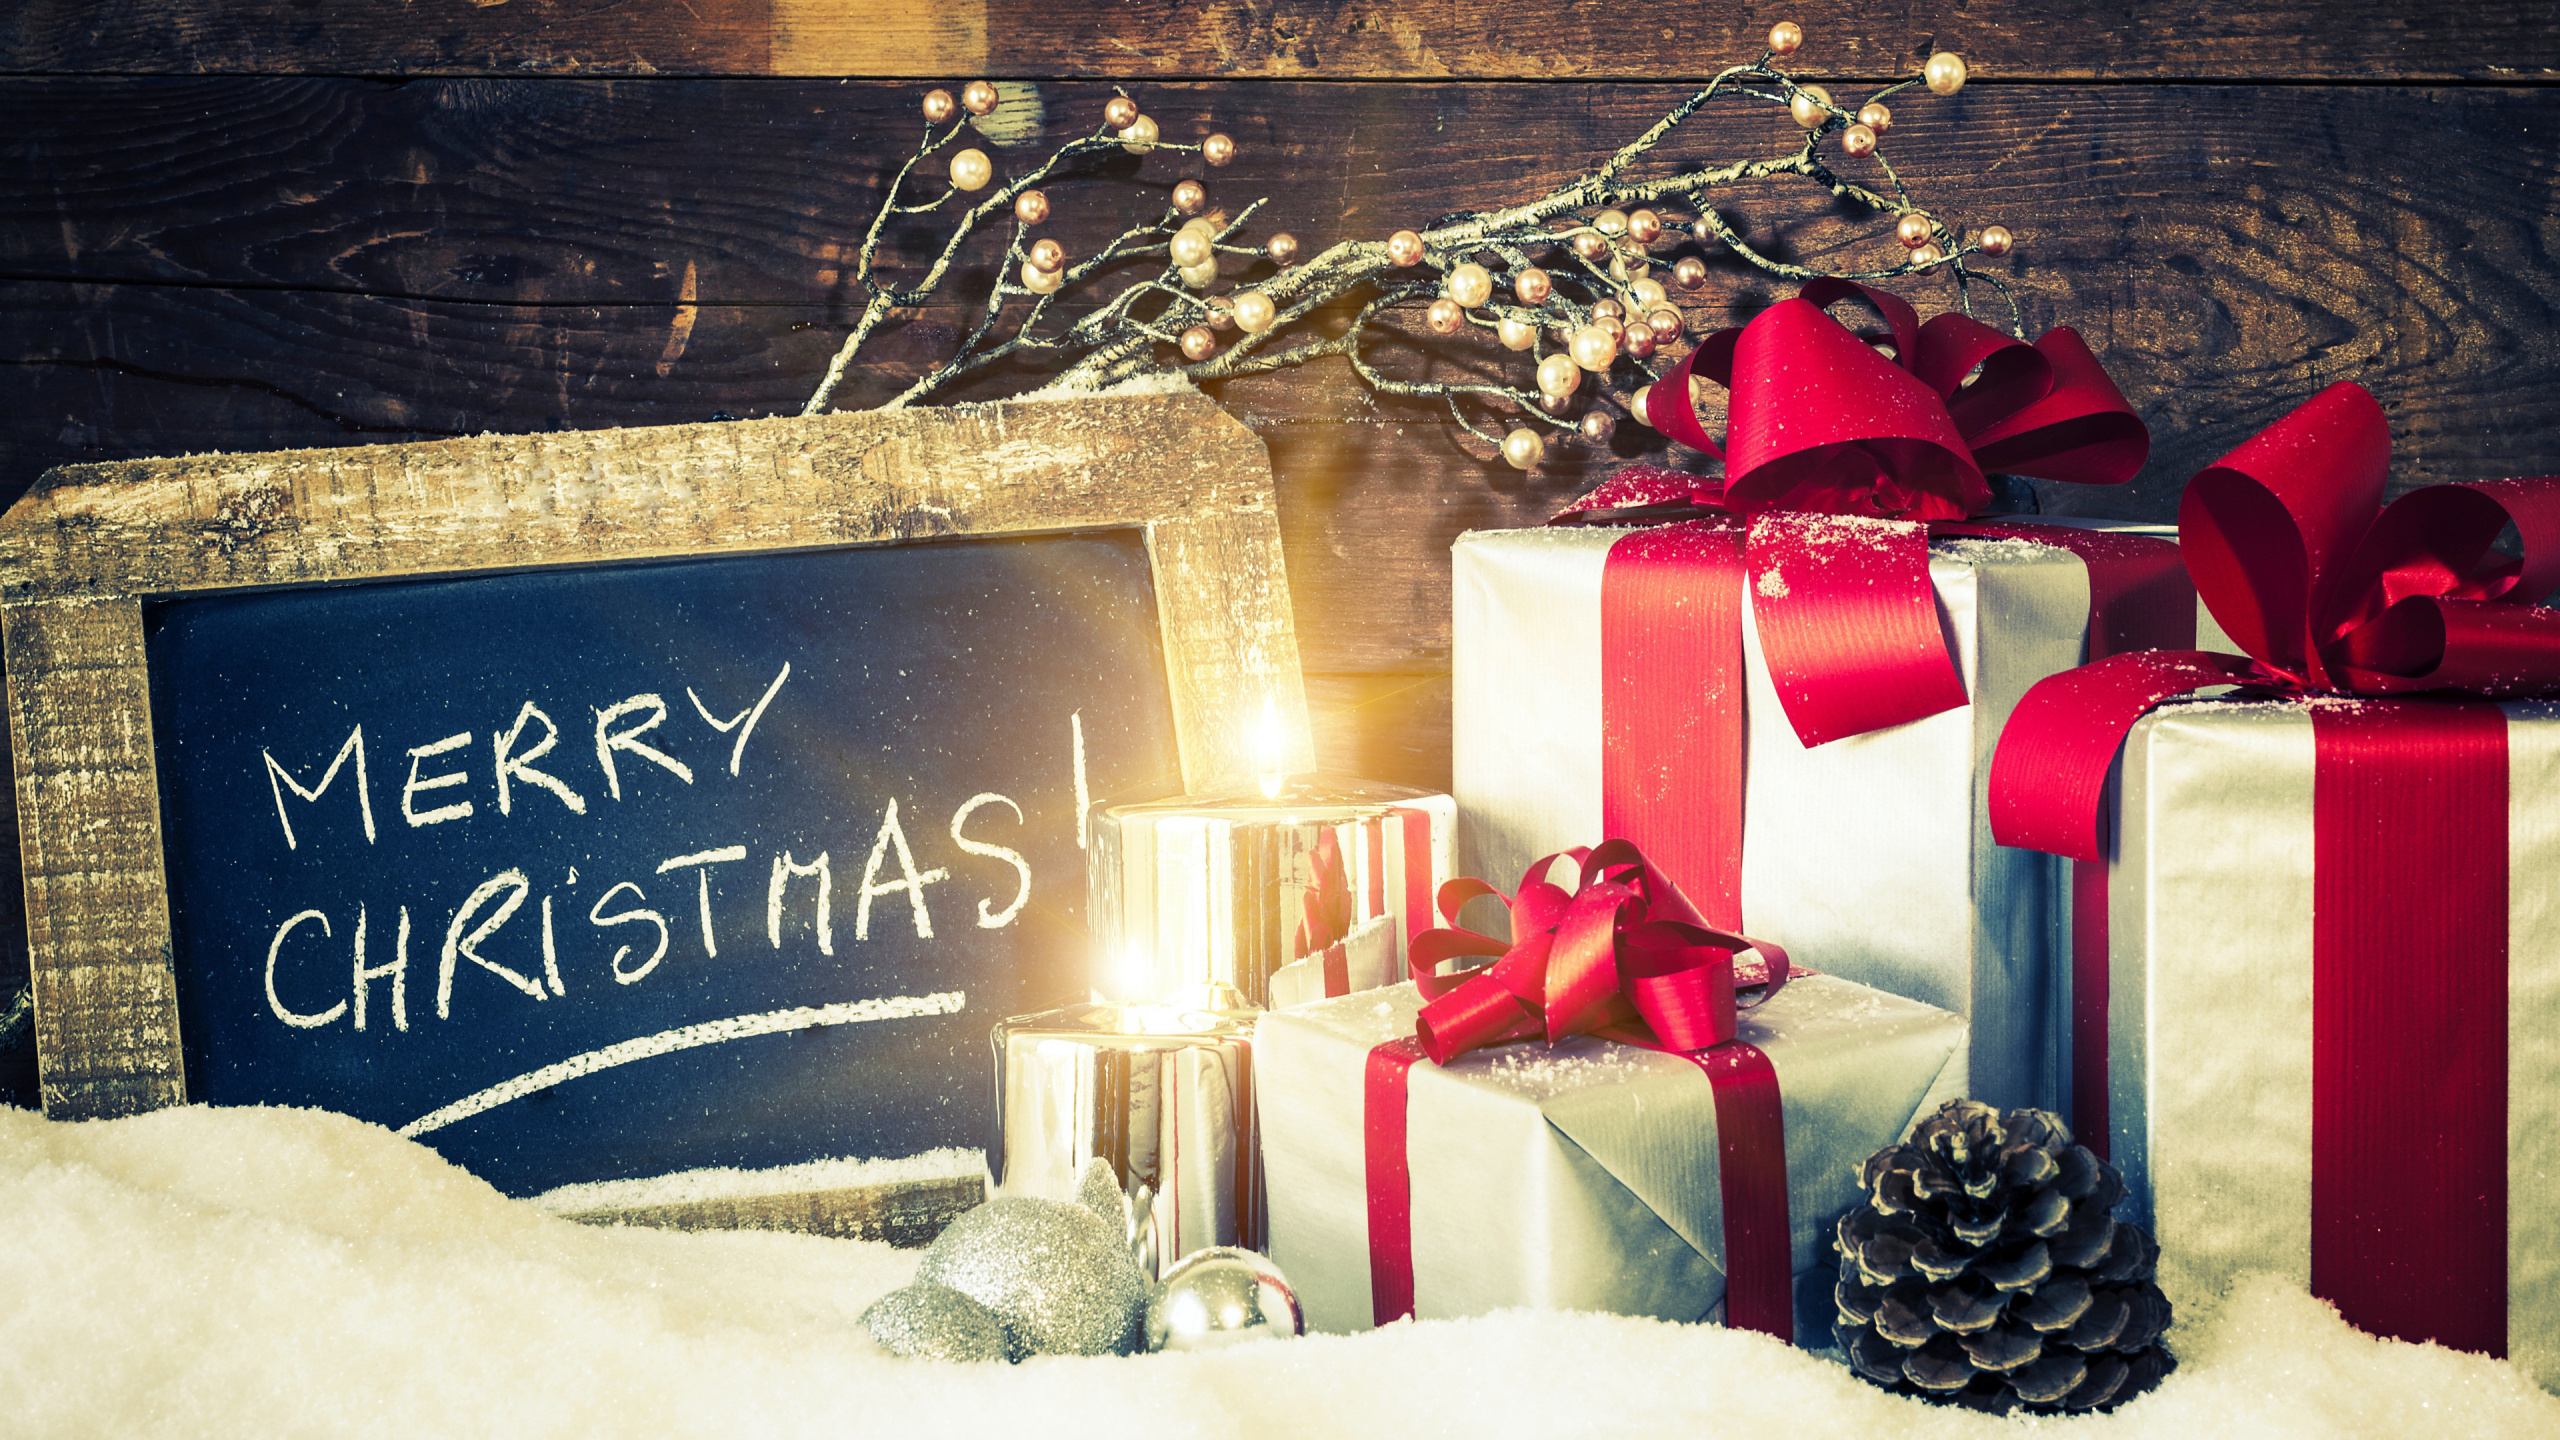 圣诞节的装饰品, 圣诞节礼物, 礼物, 新的一年, 圣诞装饰 壁纸 2560x1440 允许